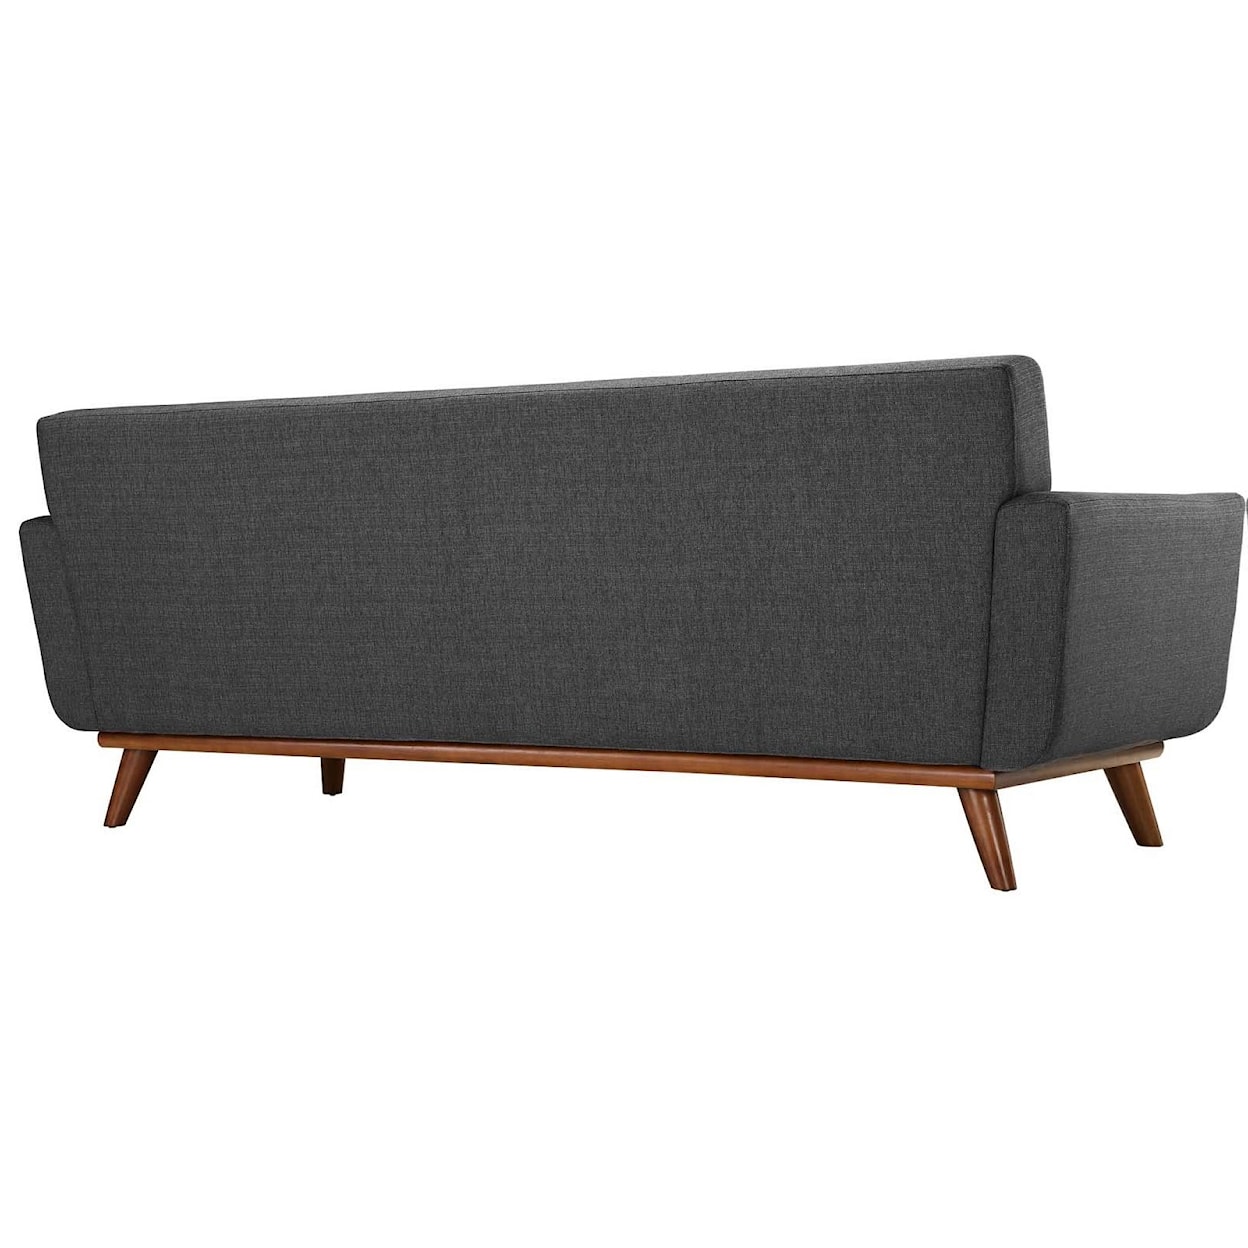 Modway Engage Engage Sofa